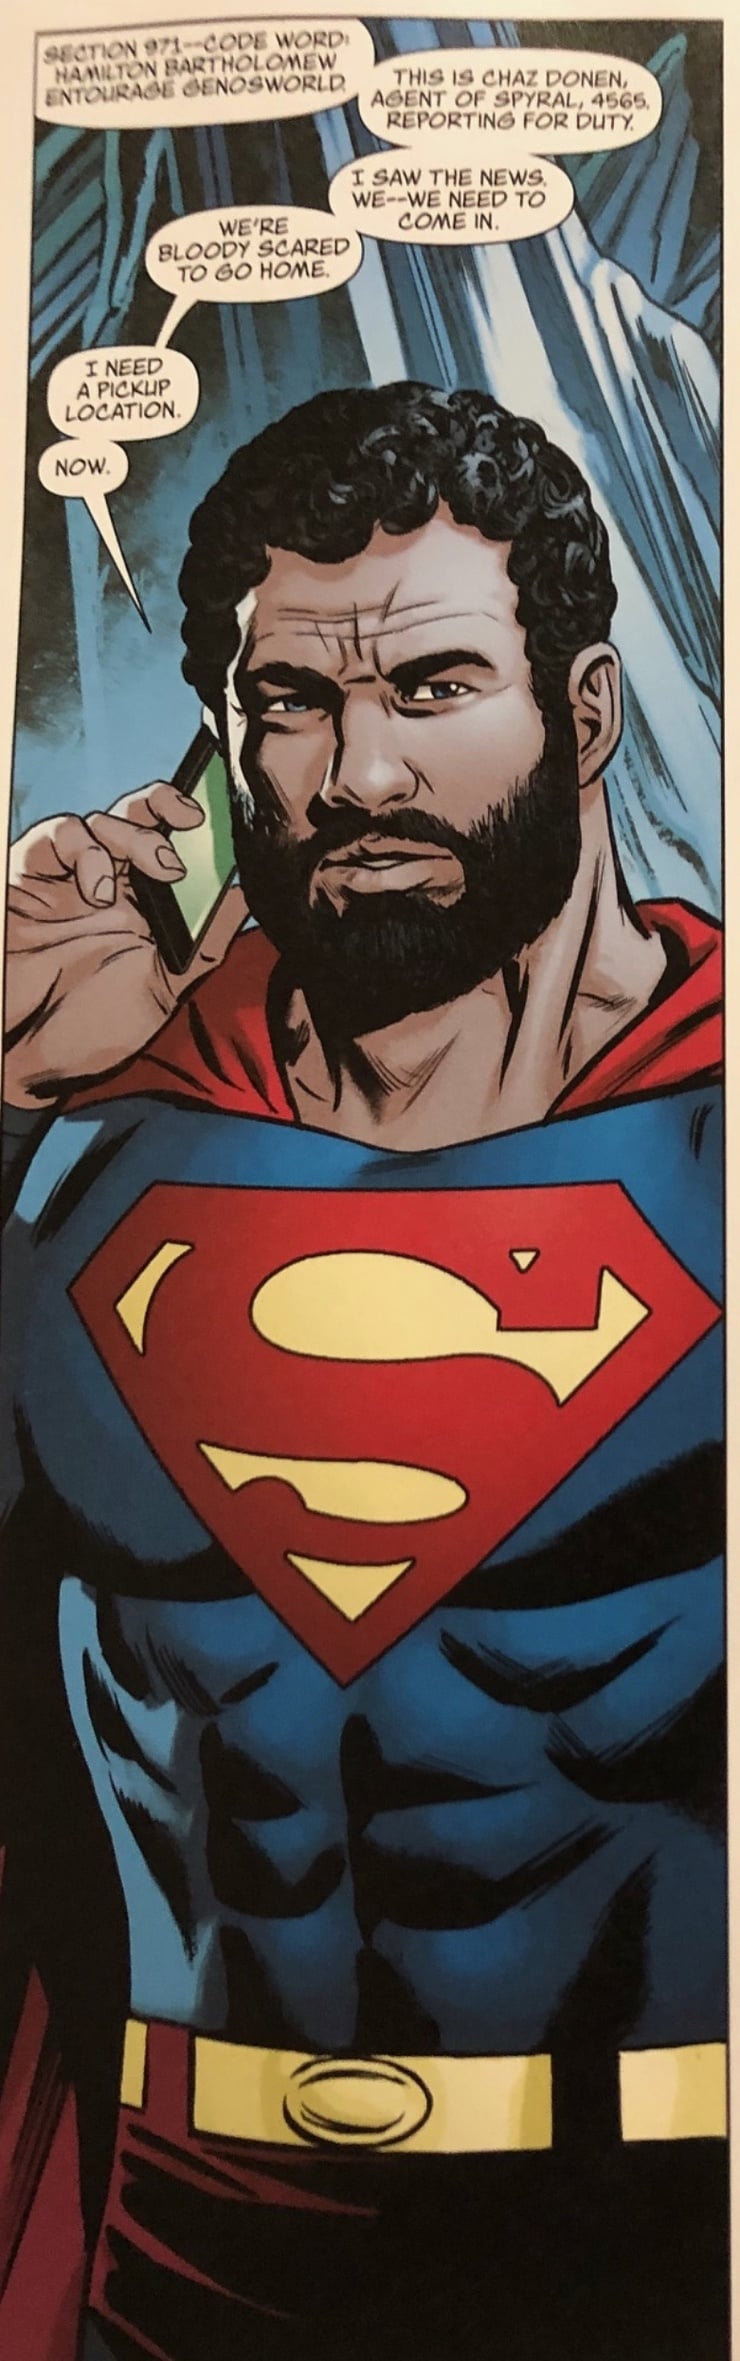 Superman (Chaz Donen)